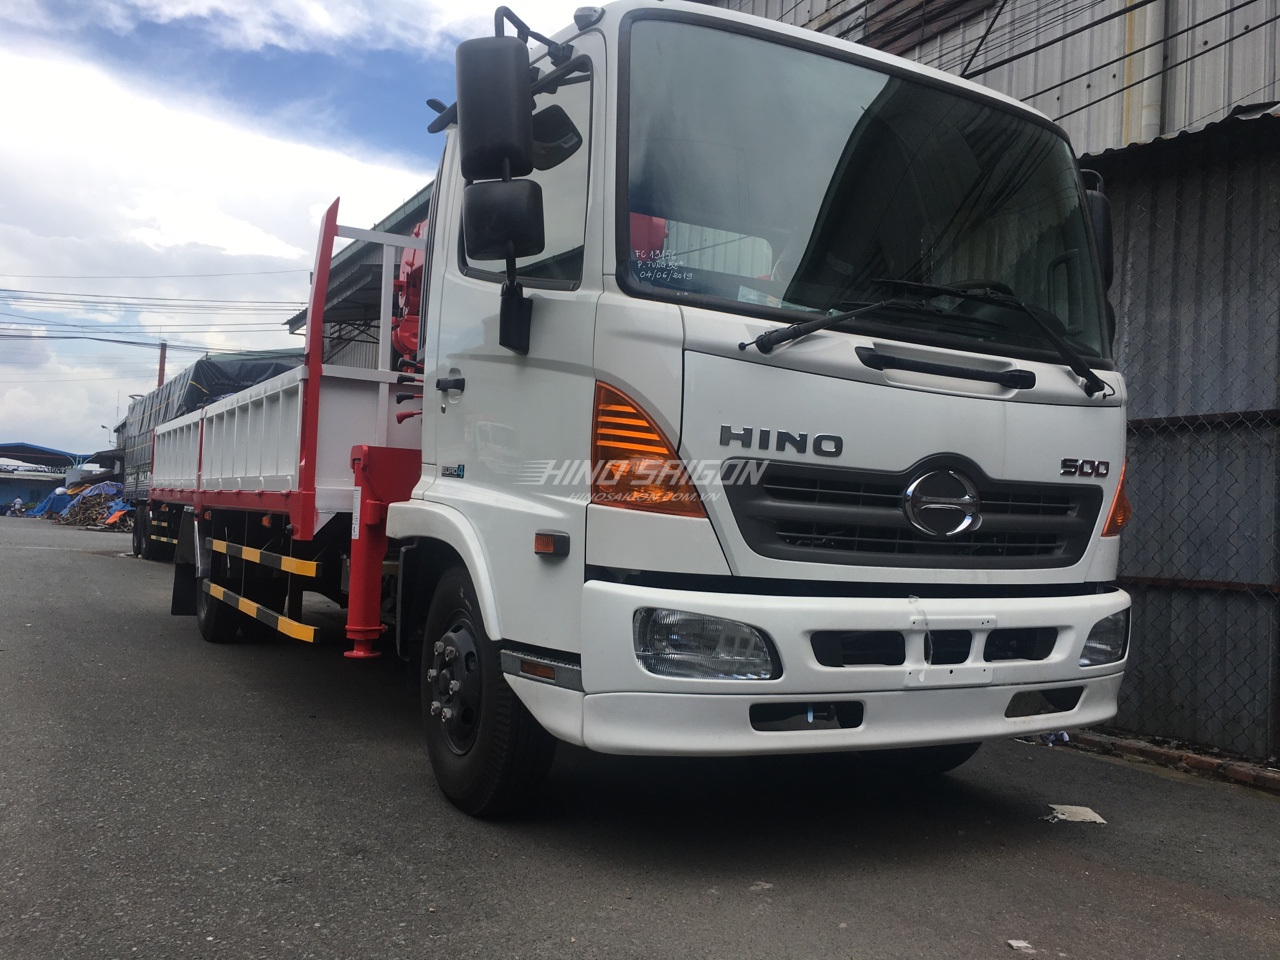 Hino FC9JLTC gắn cẩu unic URV344 tải trọng 5.2 tấn